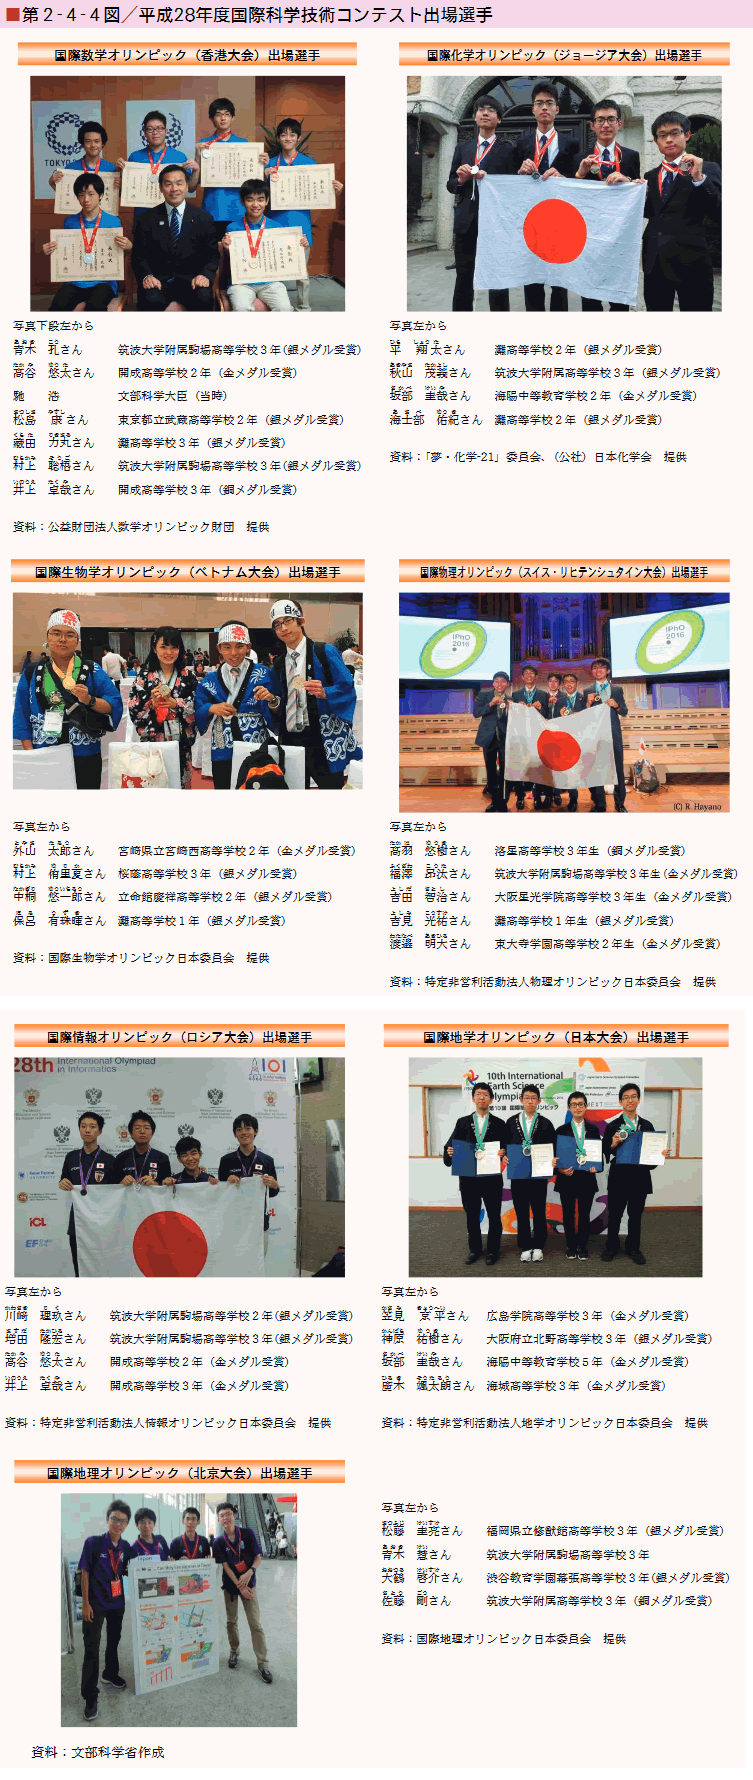 第2-4-4図 平成28年度国際科学技術コンテスト出場選手